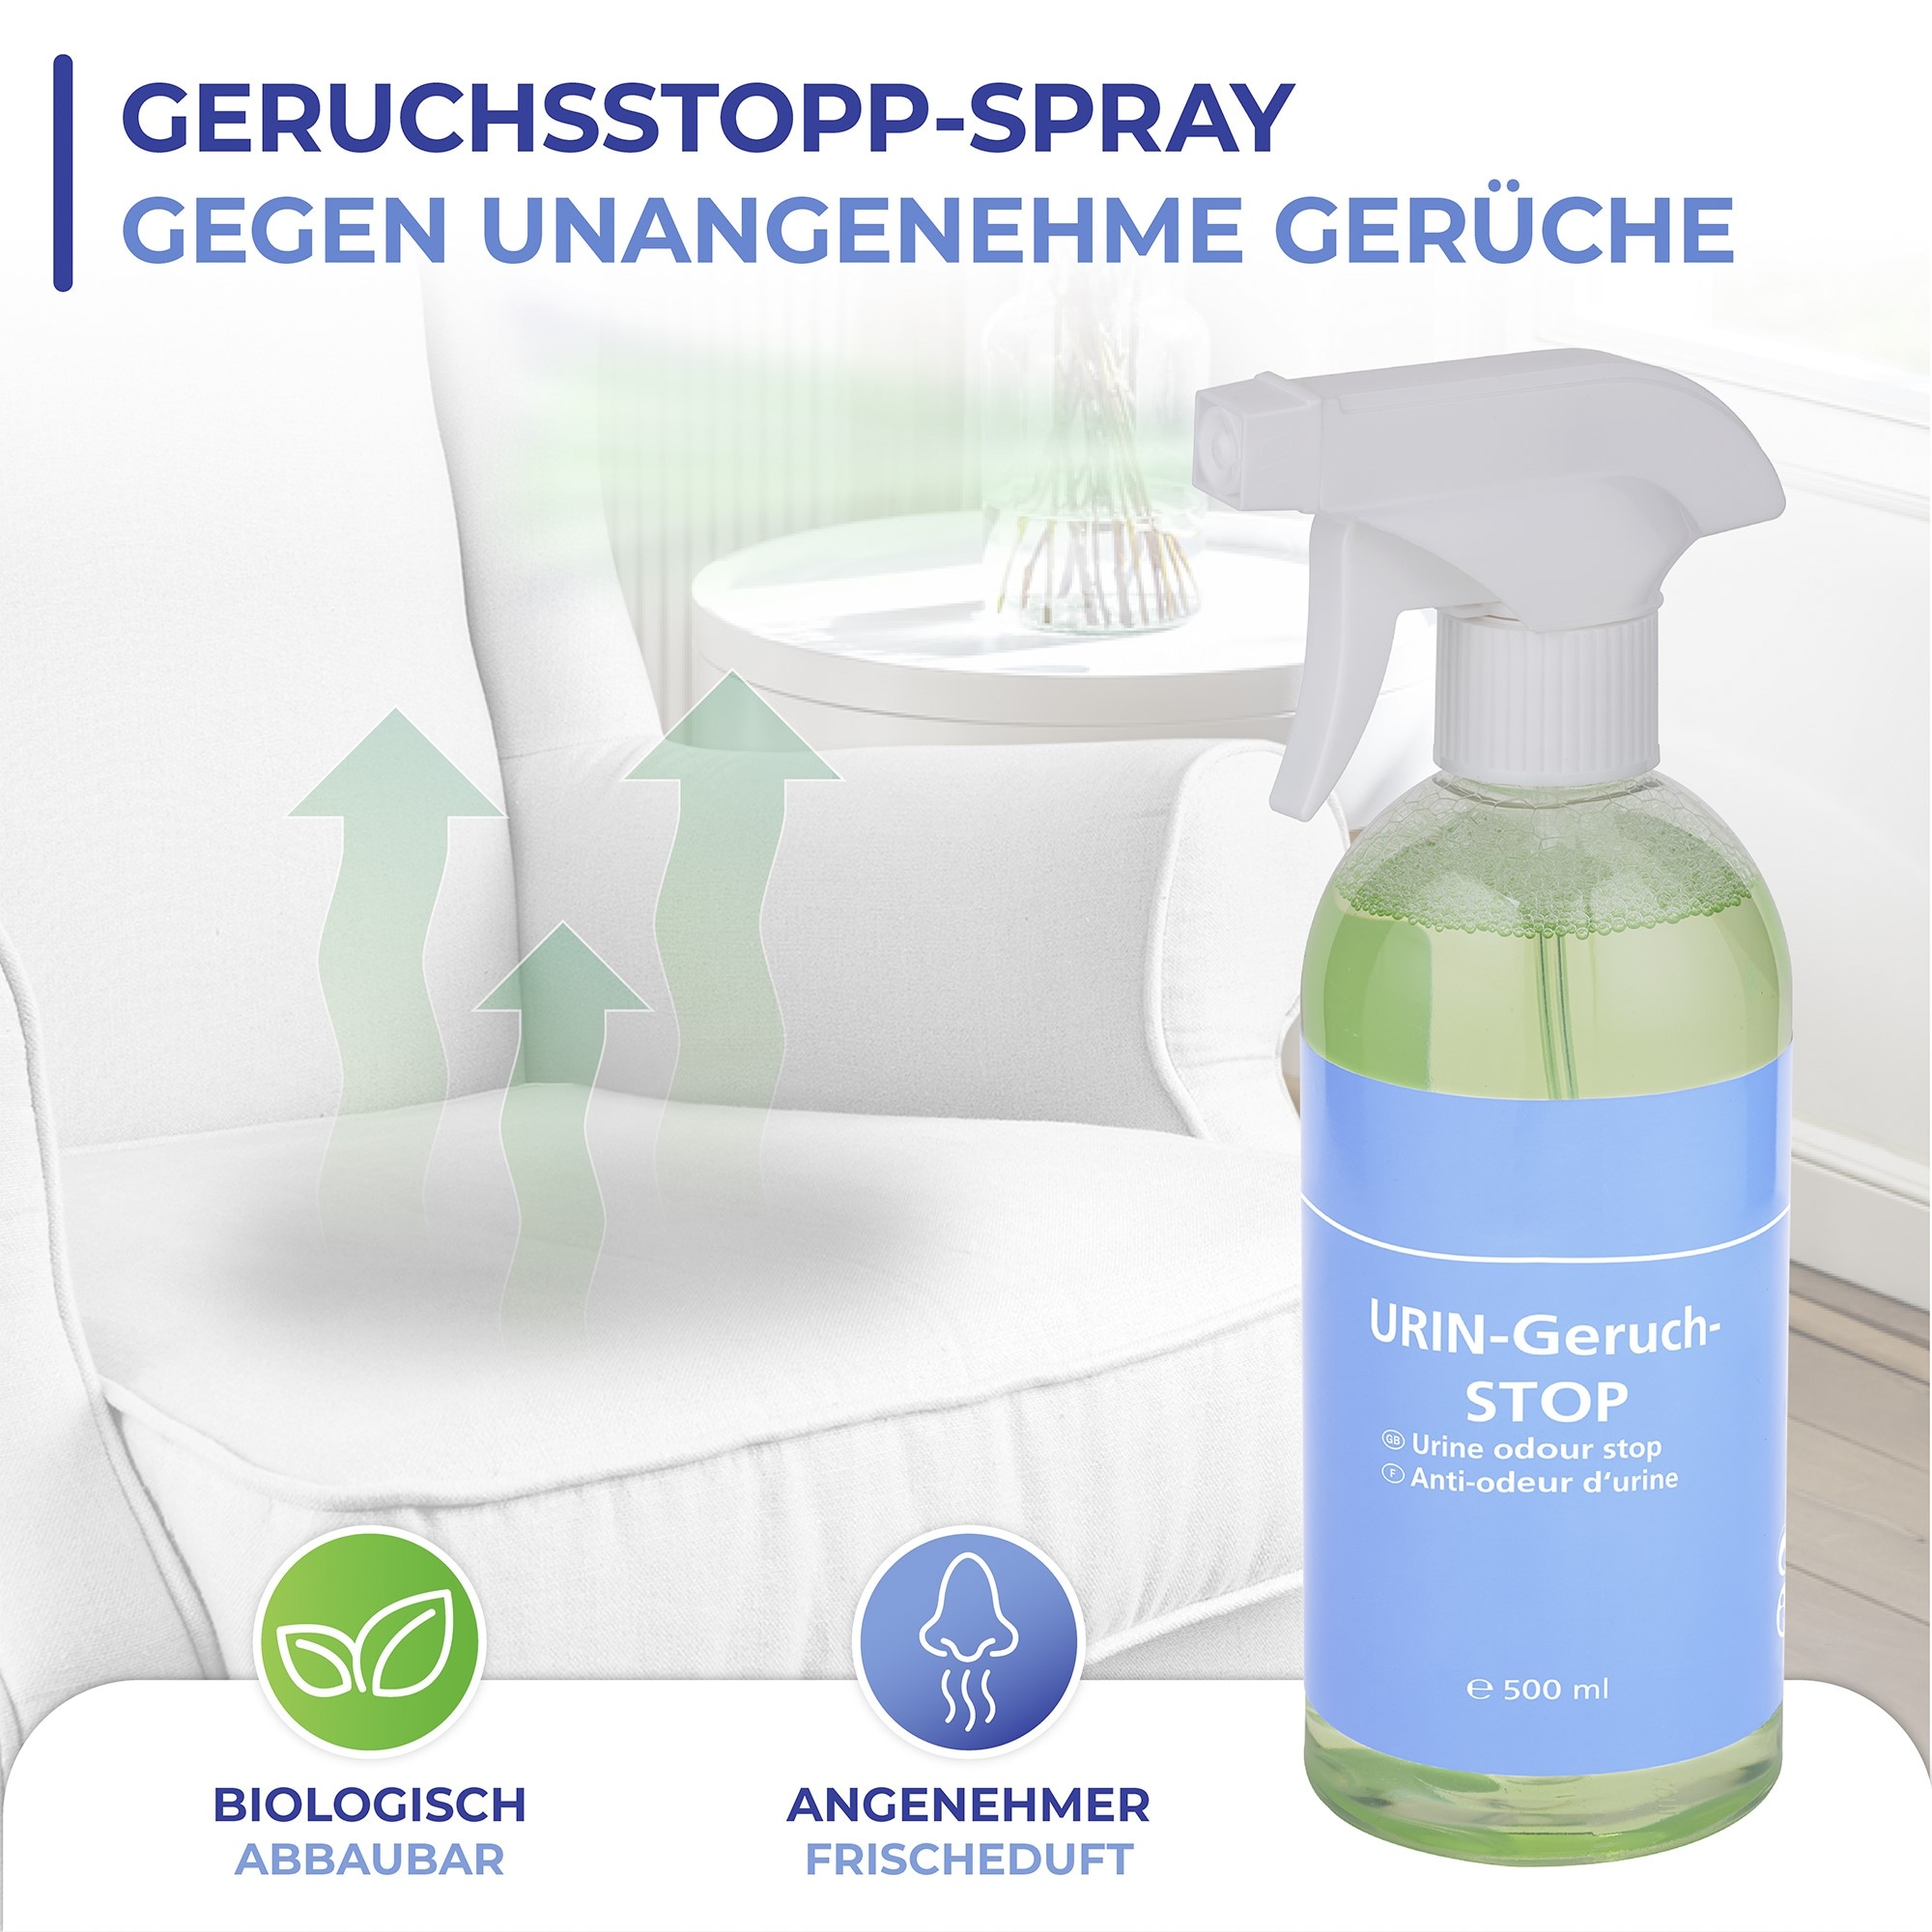 WENKO Geruchsentferner »Urin-Geruch-Stopp«